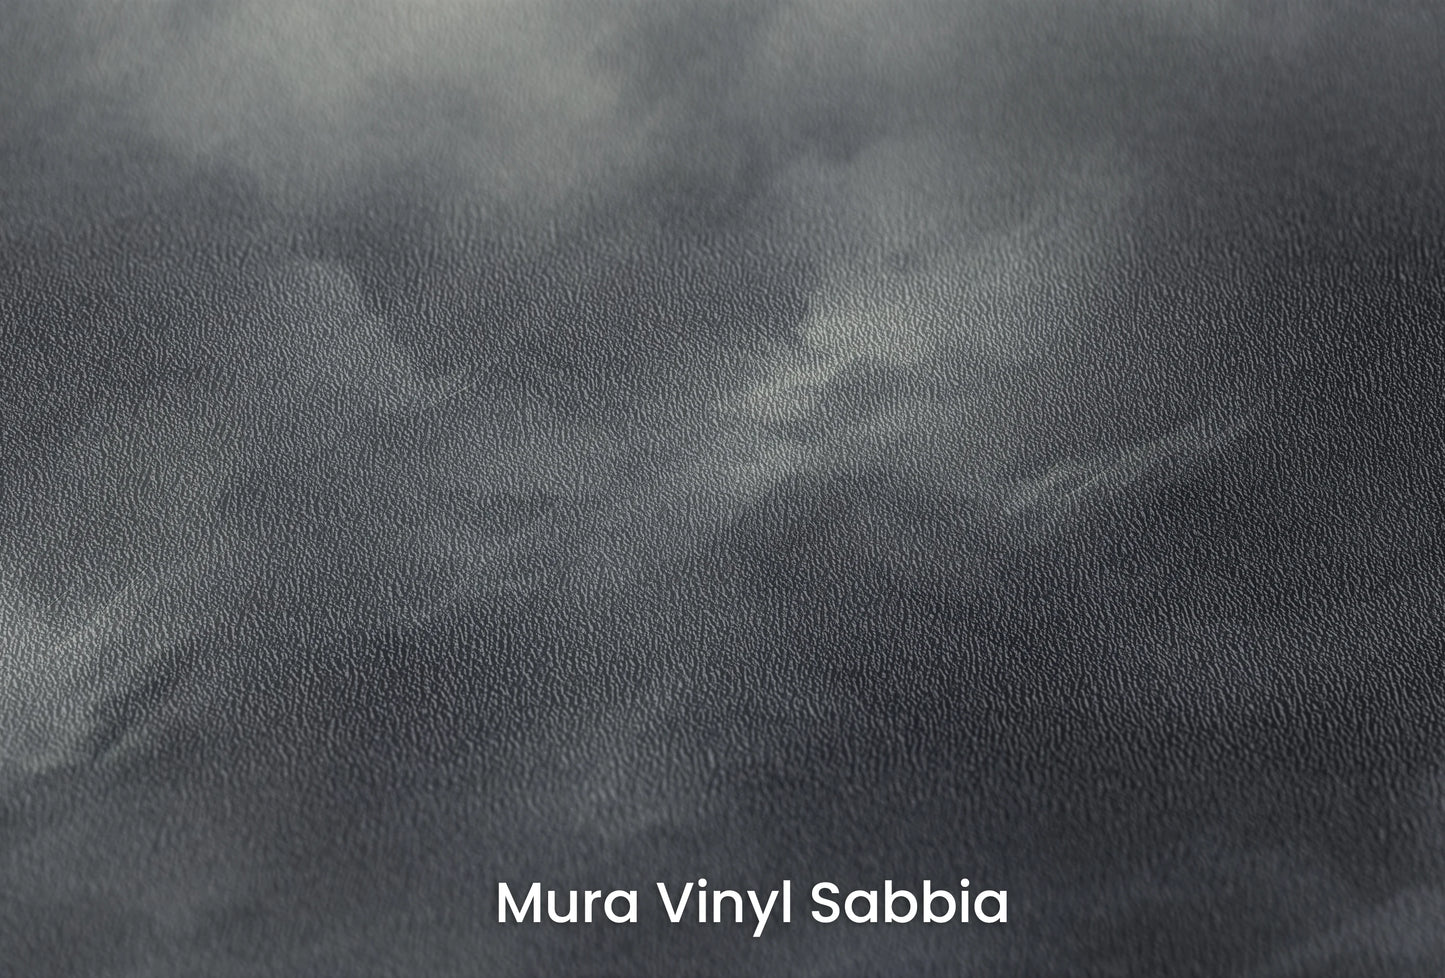 Zbliżenie na artystyczną fototapetę o nazwie Dynamic Swirls na podłożu Mura Vinyl Sabbia struktura grubego ziarna piasku.